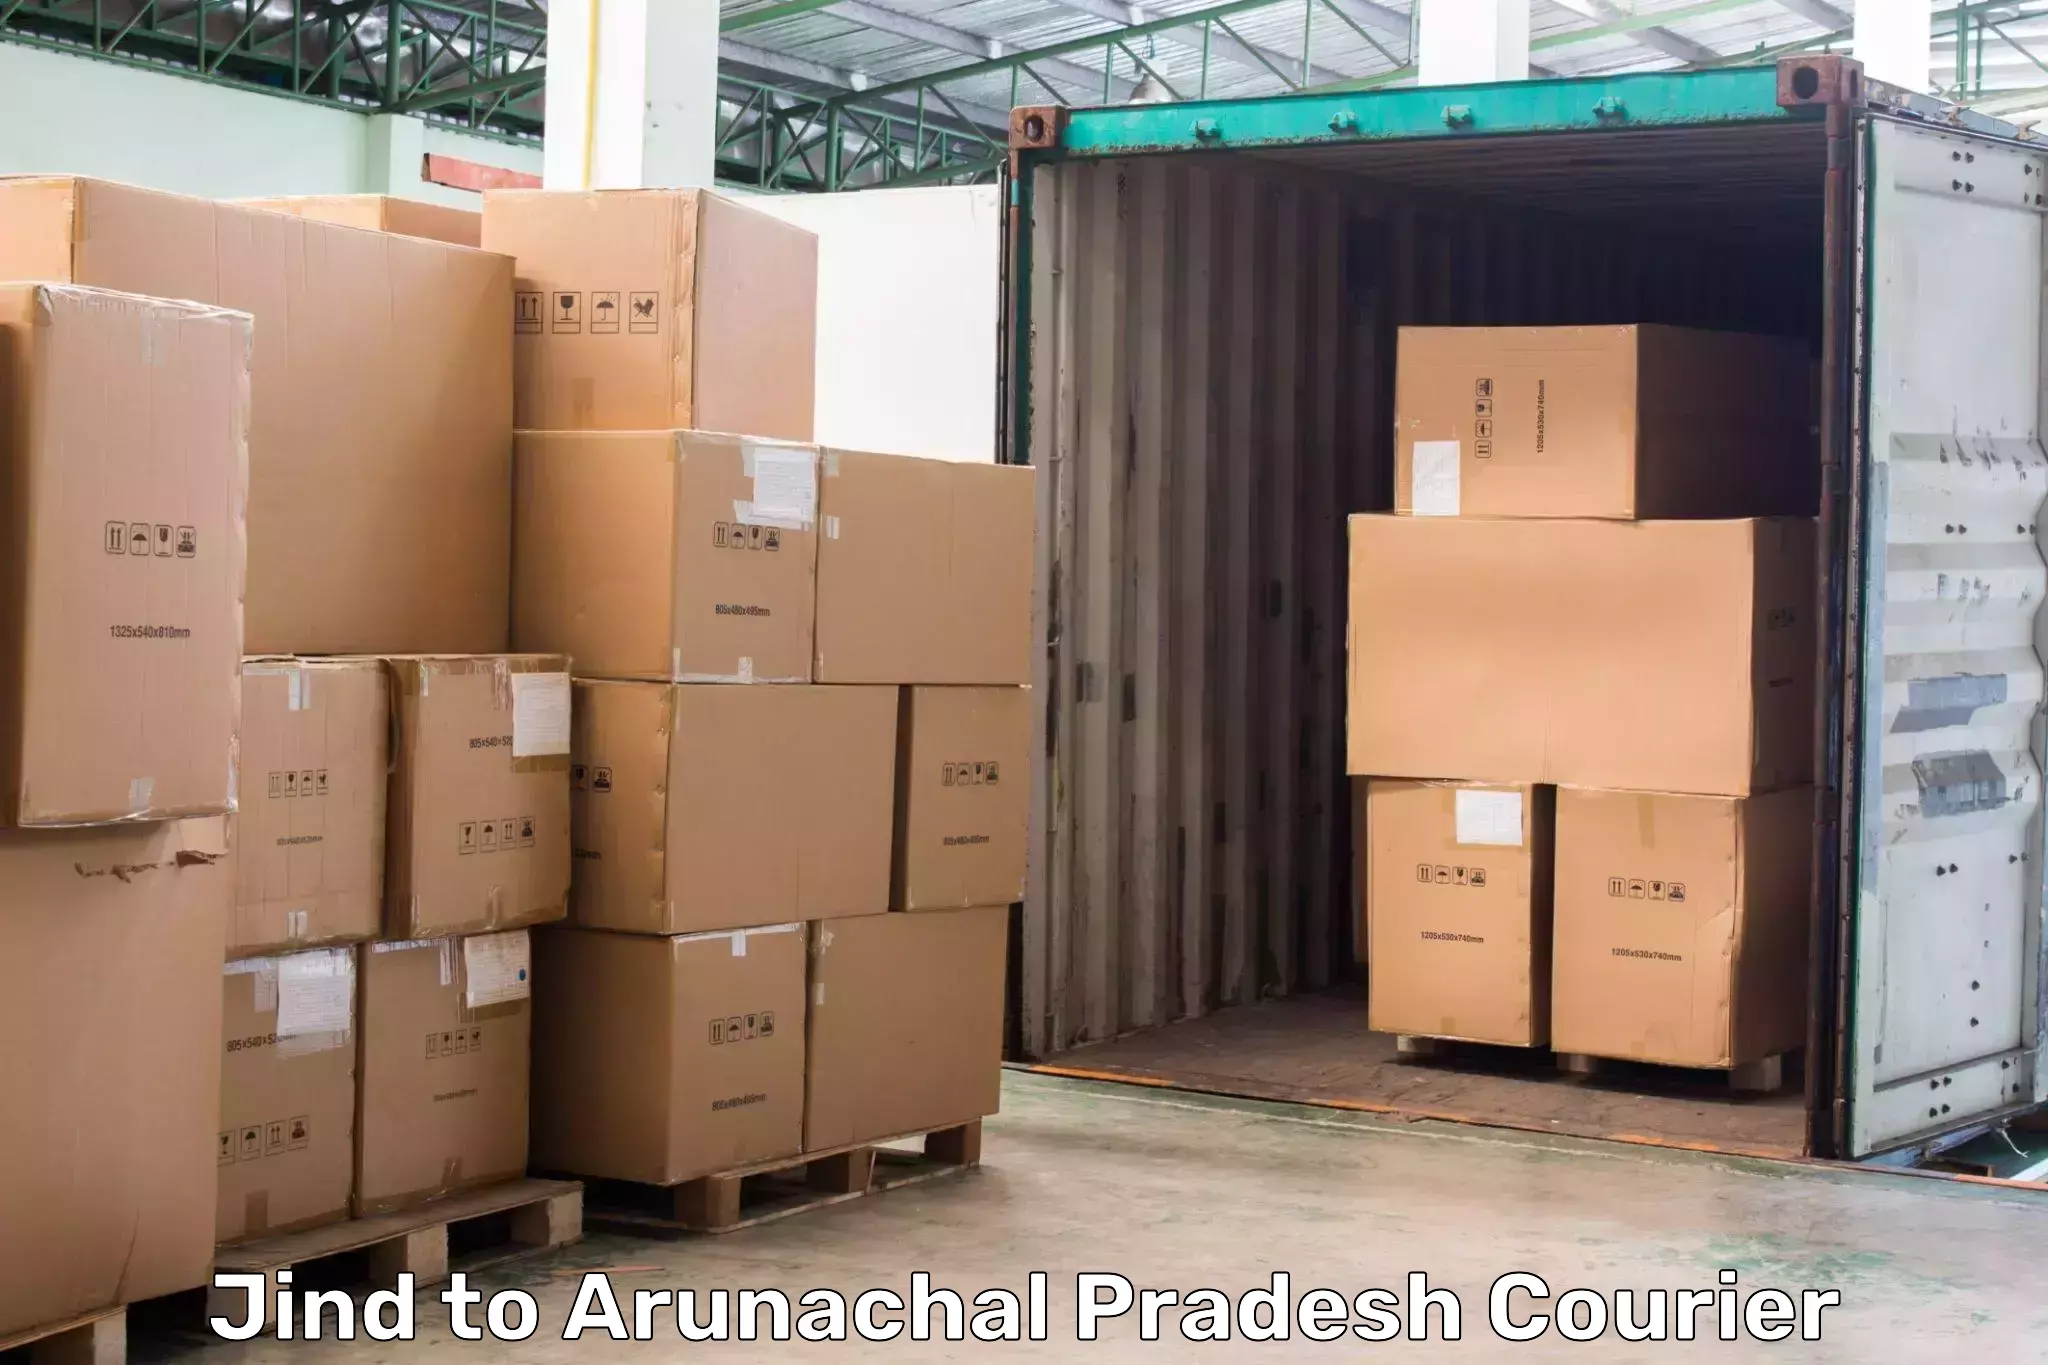 Multi-national courier services Jind to Arunachal Pradesh